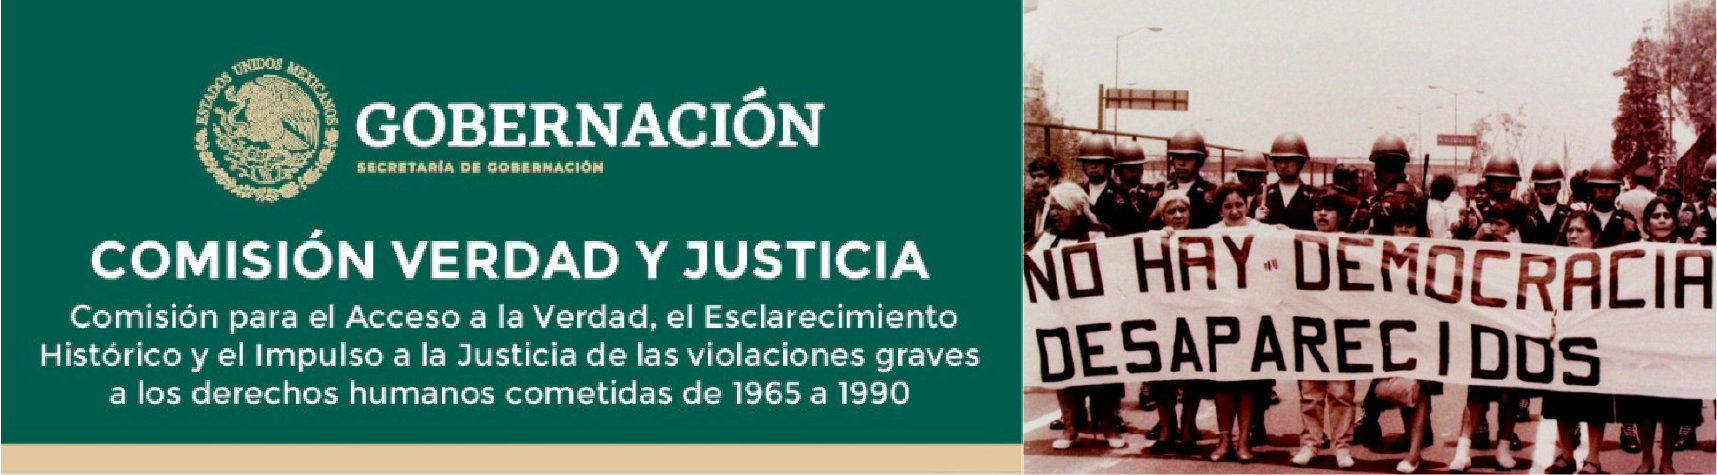 México: Comisión de la Verdad y Justicia investigará violaciones de derechos humanos